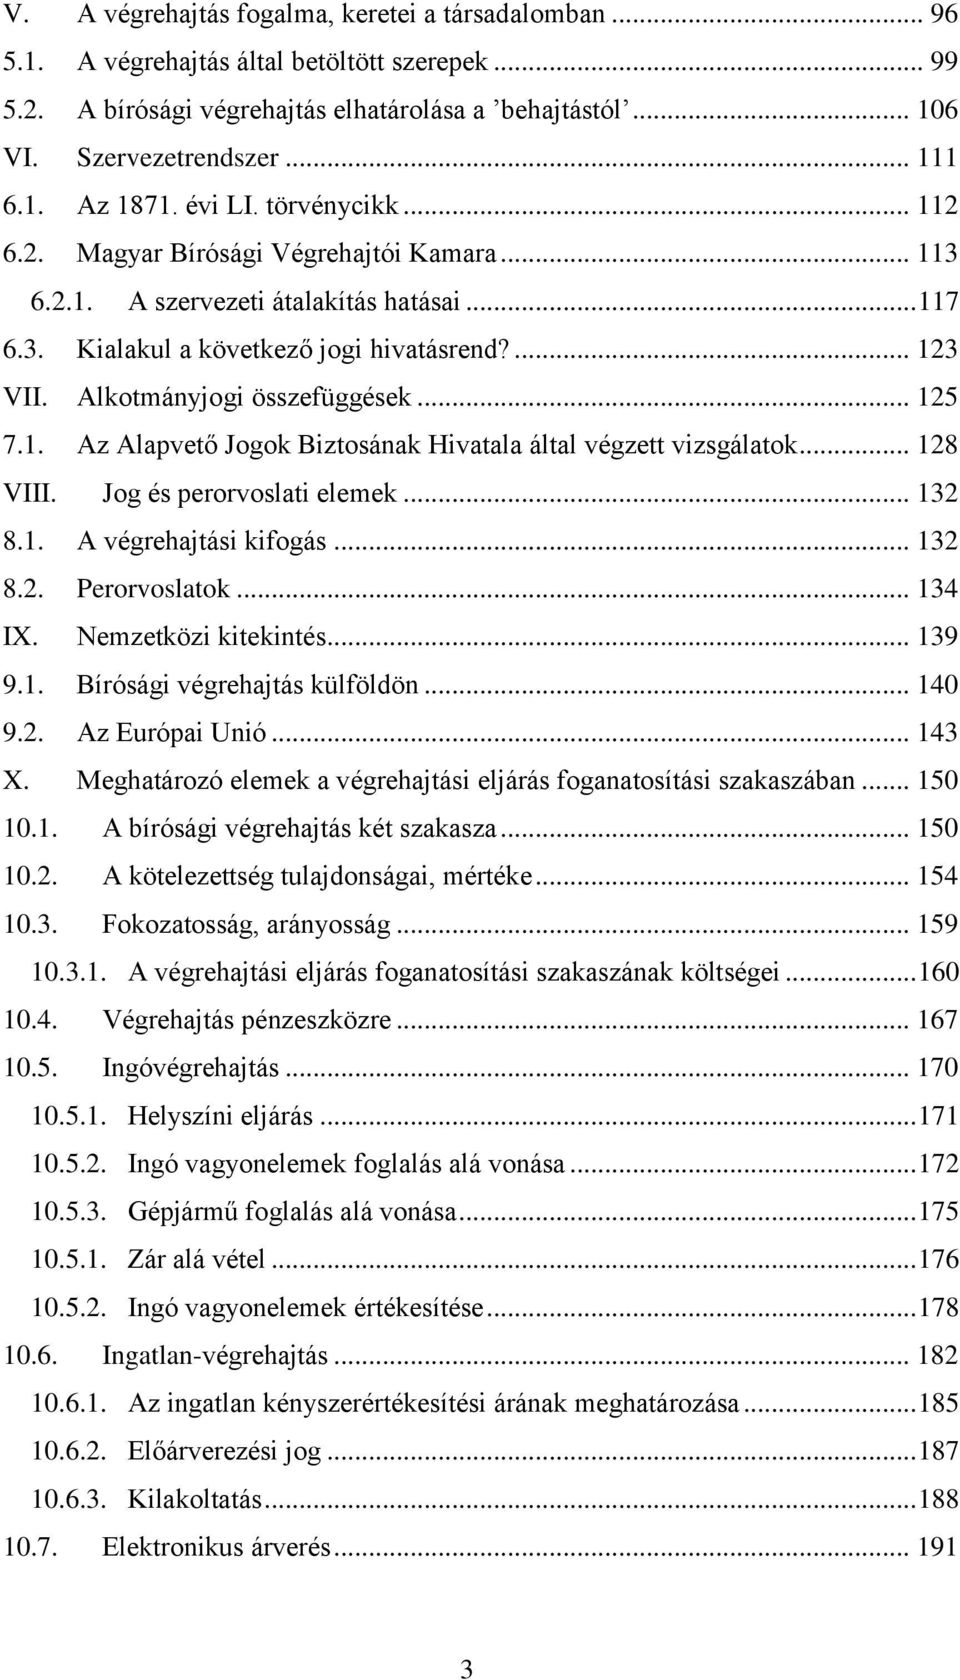 PHD ÉRTEKEZÉS. A bírósági végrehajtás jogintézményének lehetséges  fejlesztési irányai Magyarországon - PDF Free Download